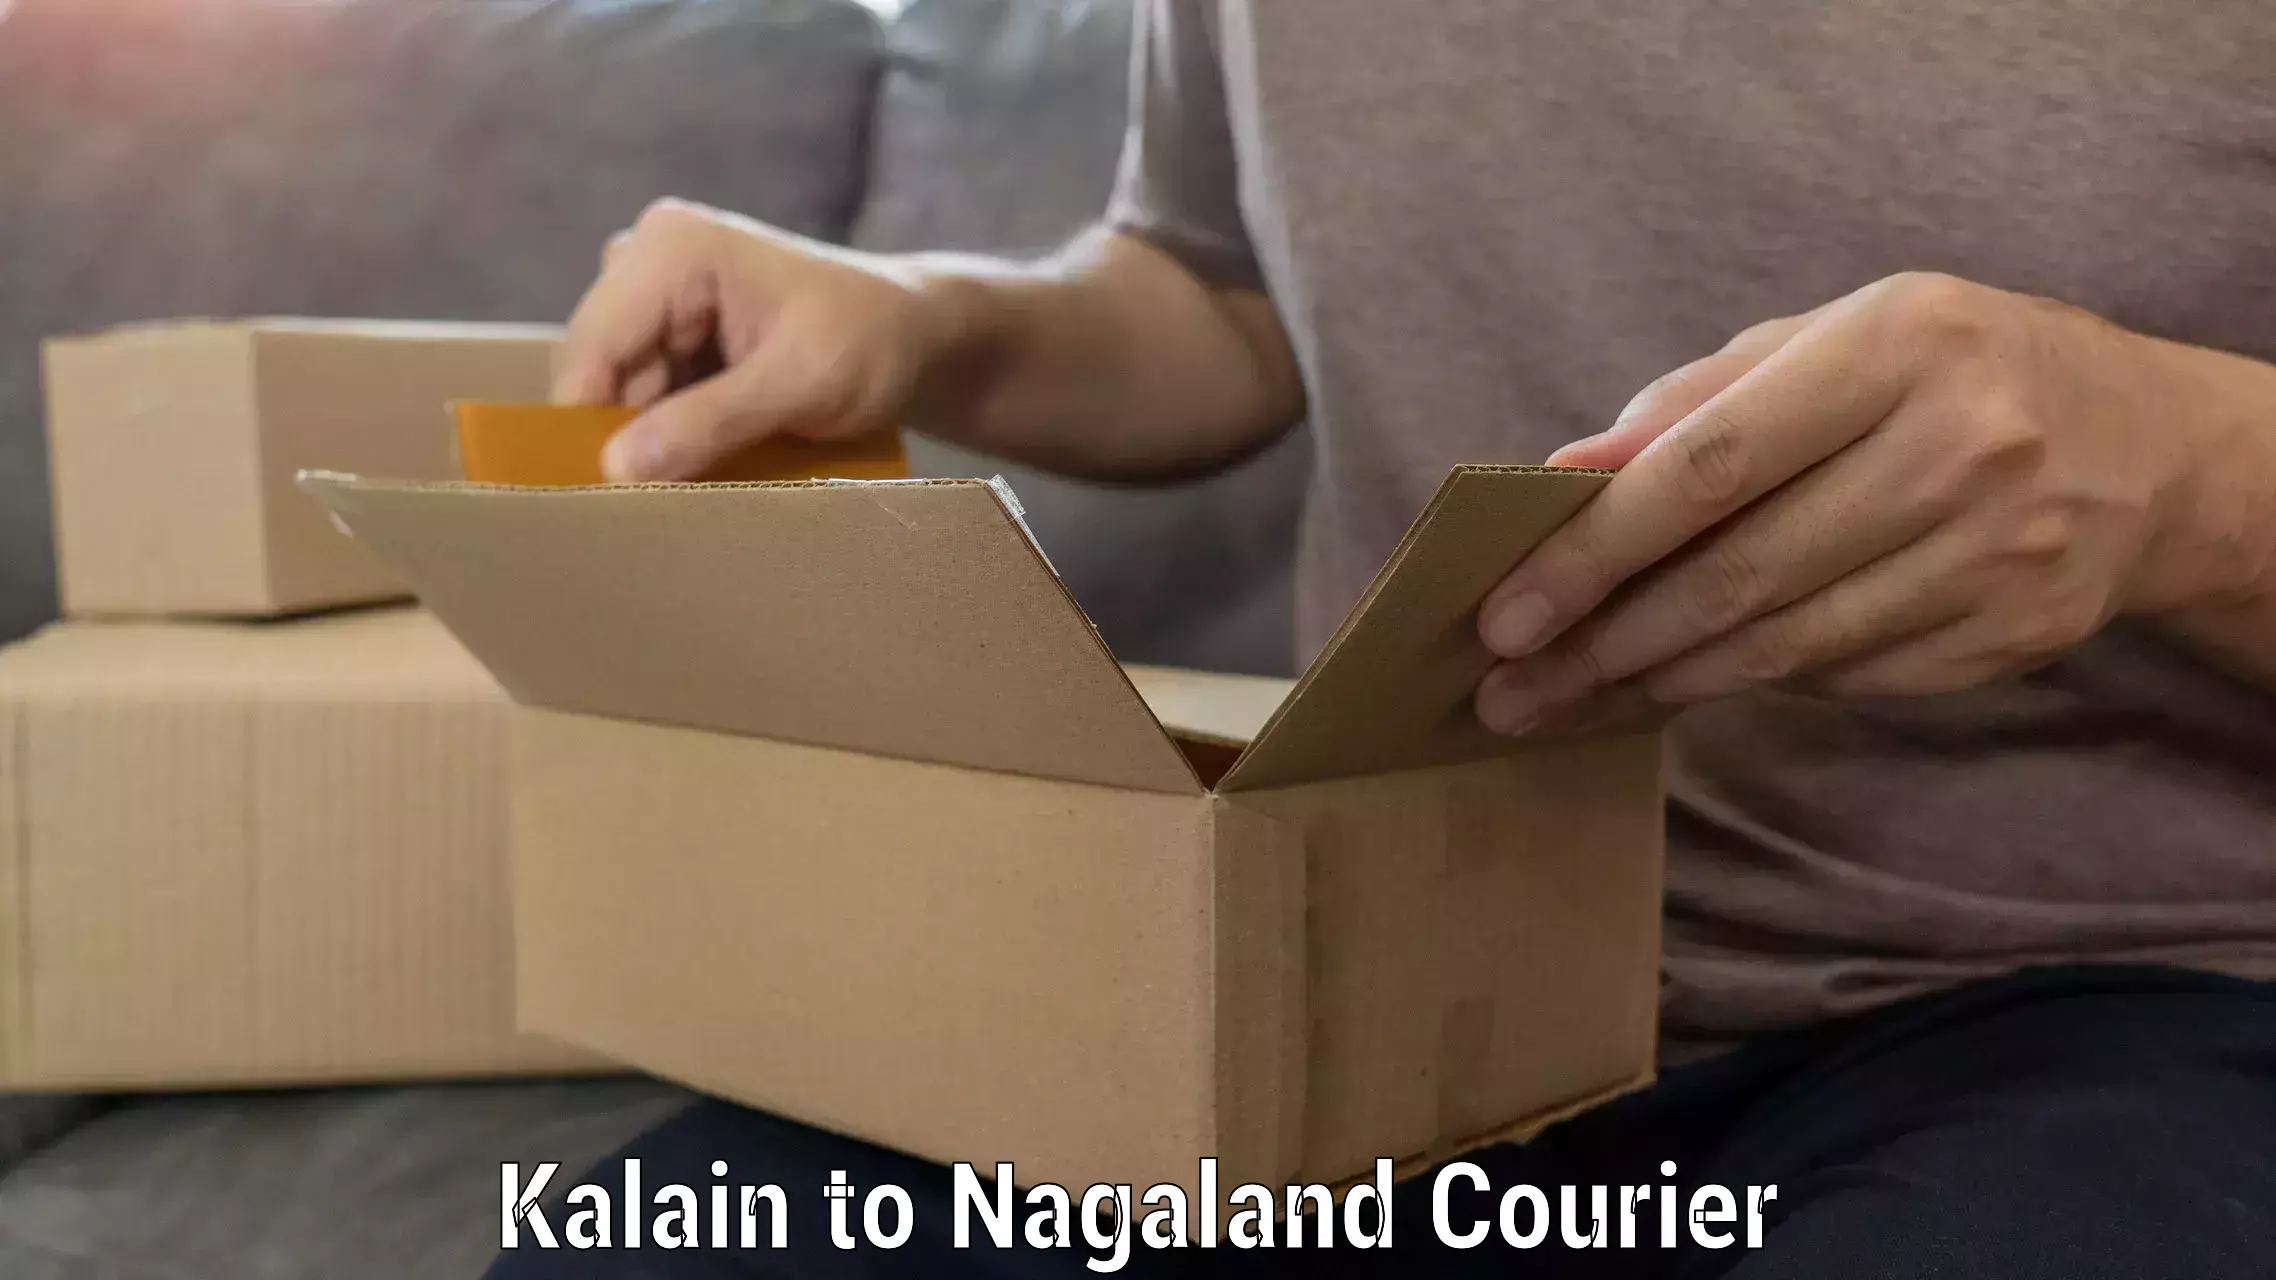 Furniture transport service Kalain to Nagaland